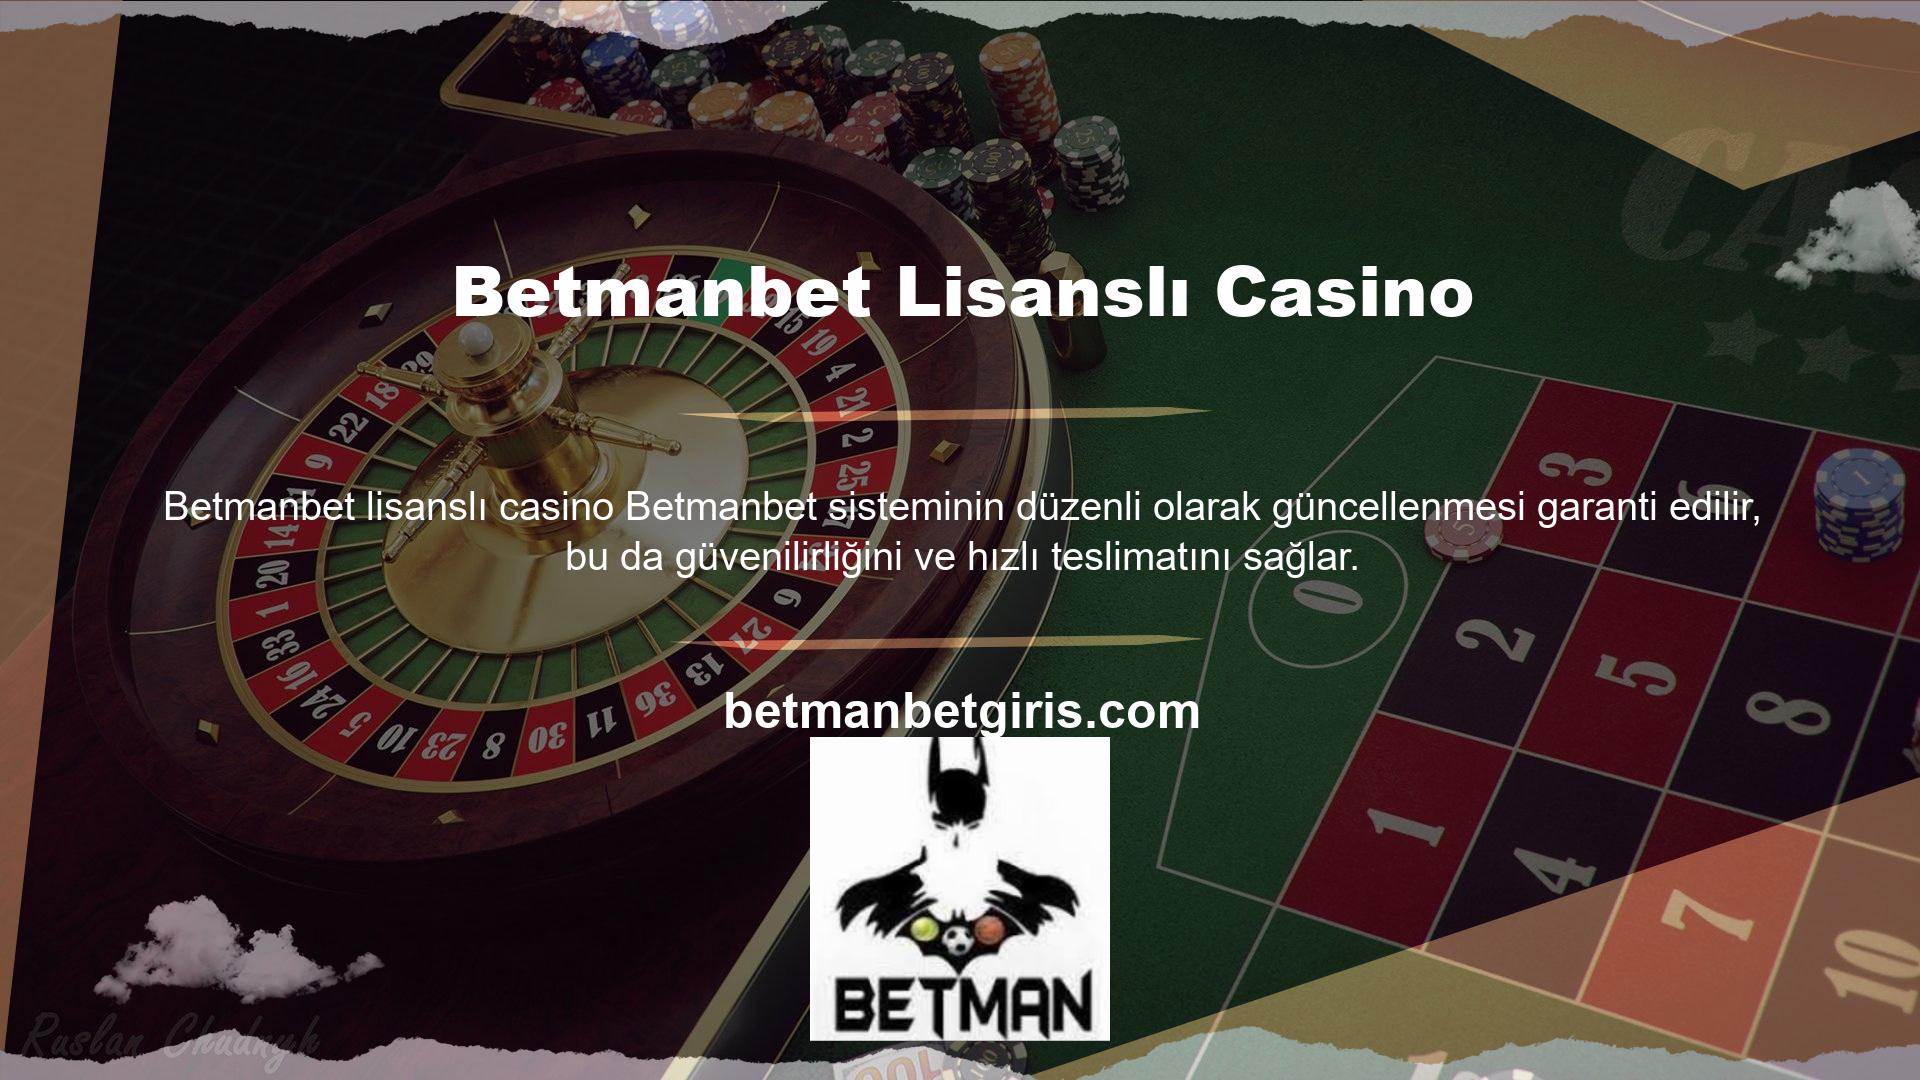 Betmanbet lisanslı casino ve bahis seçeneklerine yalnızca sisteme üye olan üyeler erişebilir